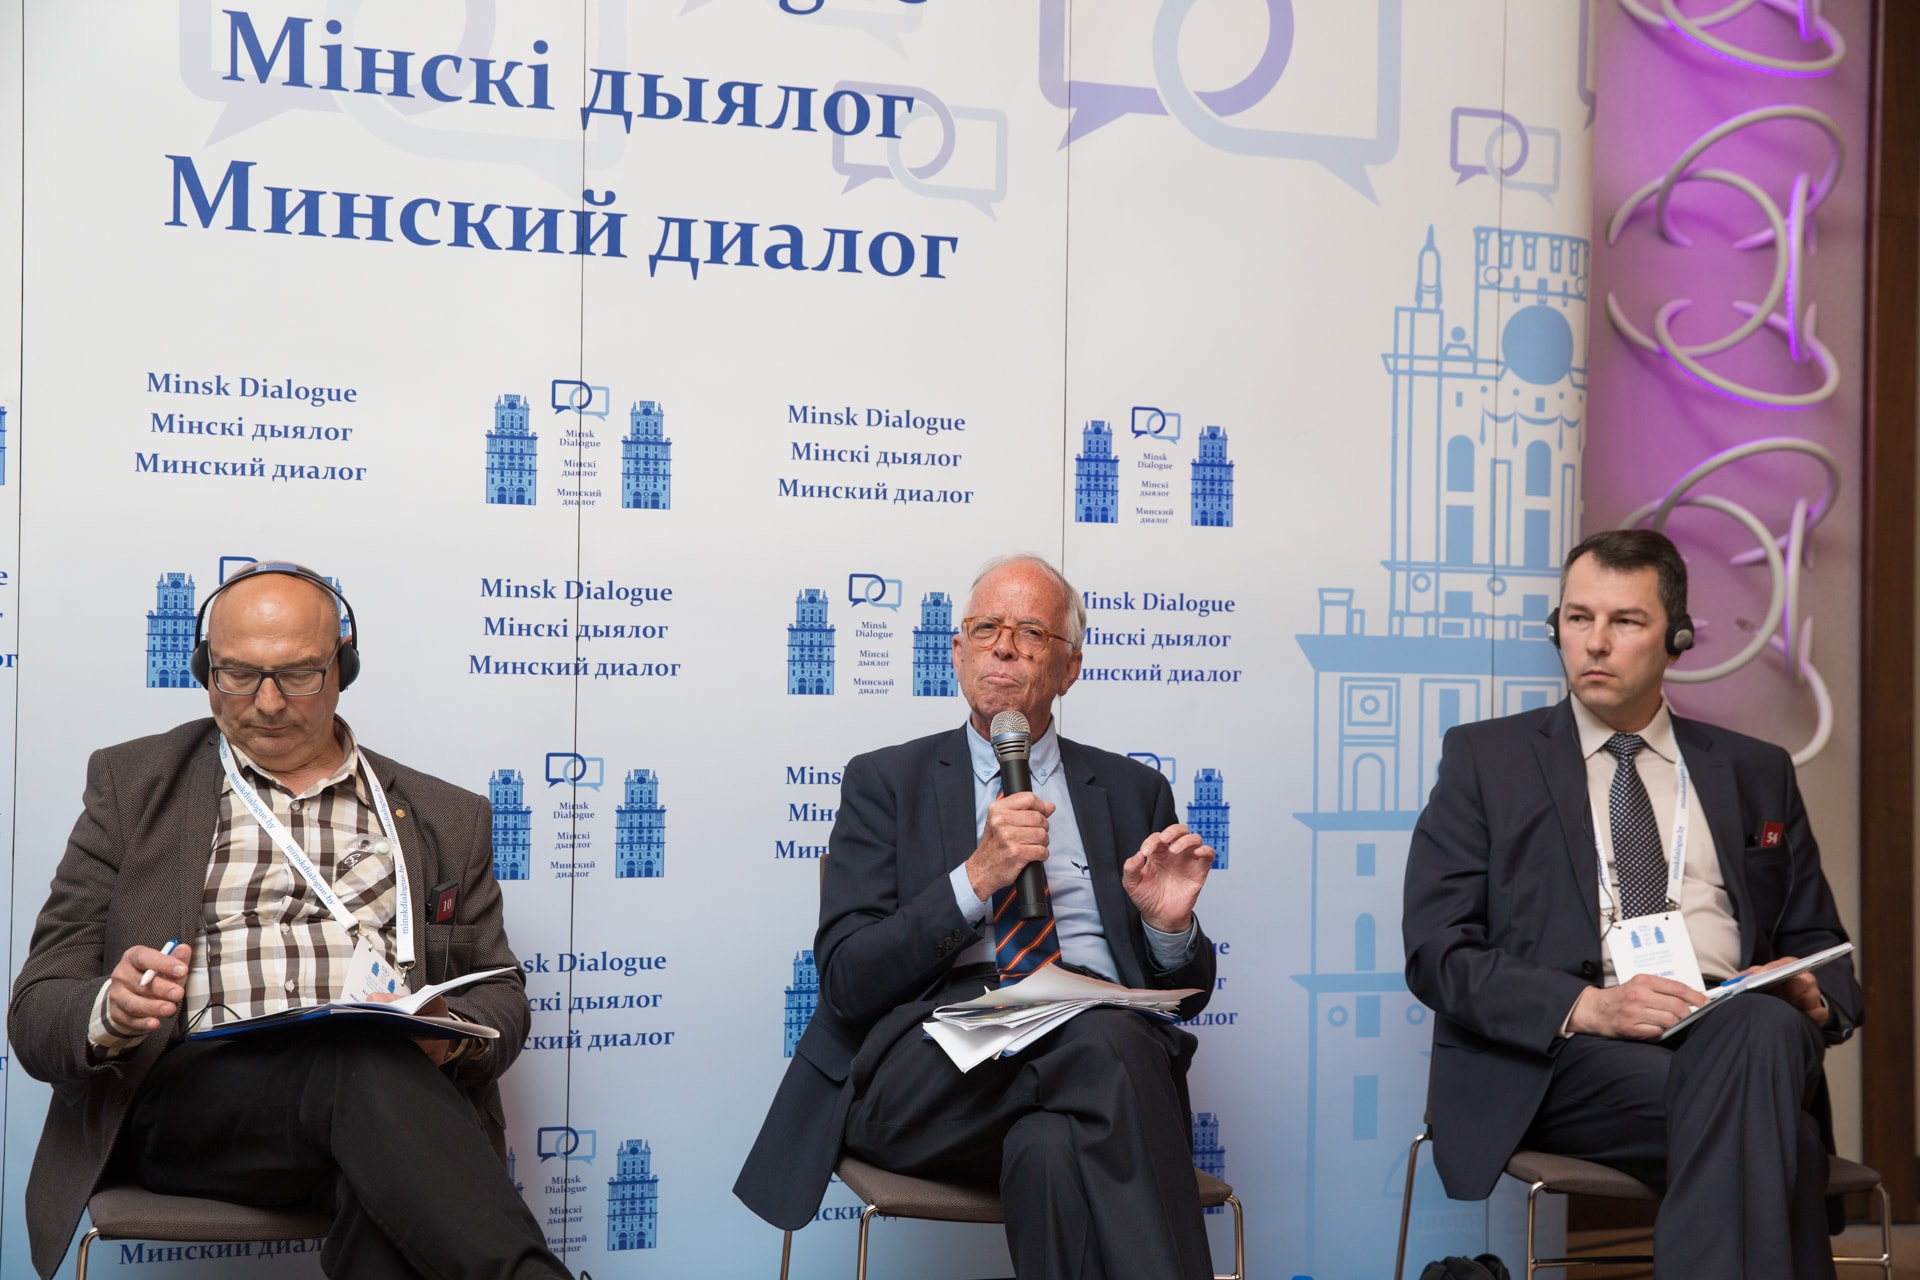 Minsk Dialogue Forum - Day 2 (24.05.2018) 